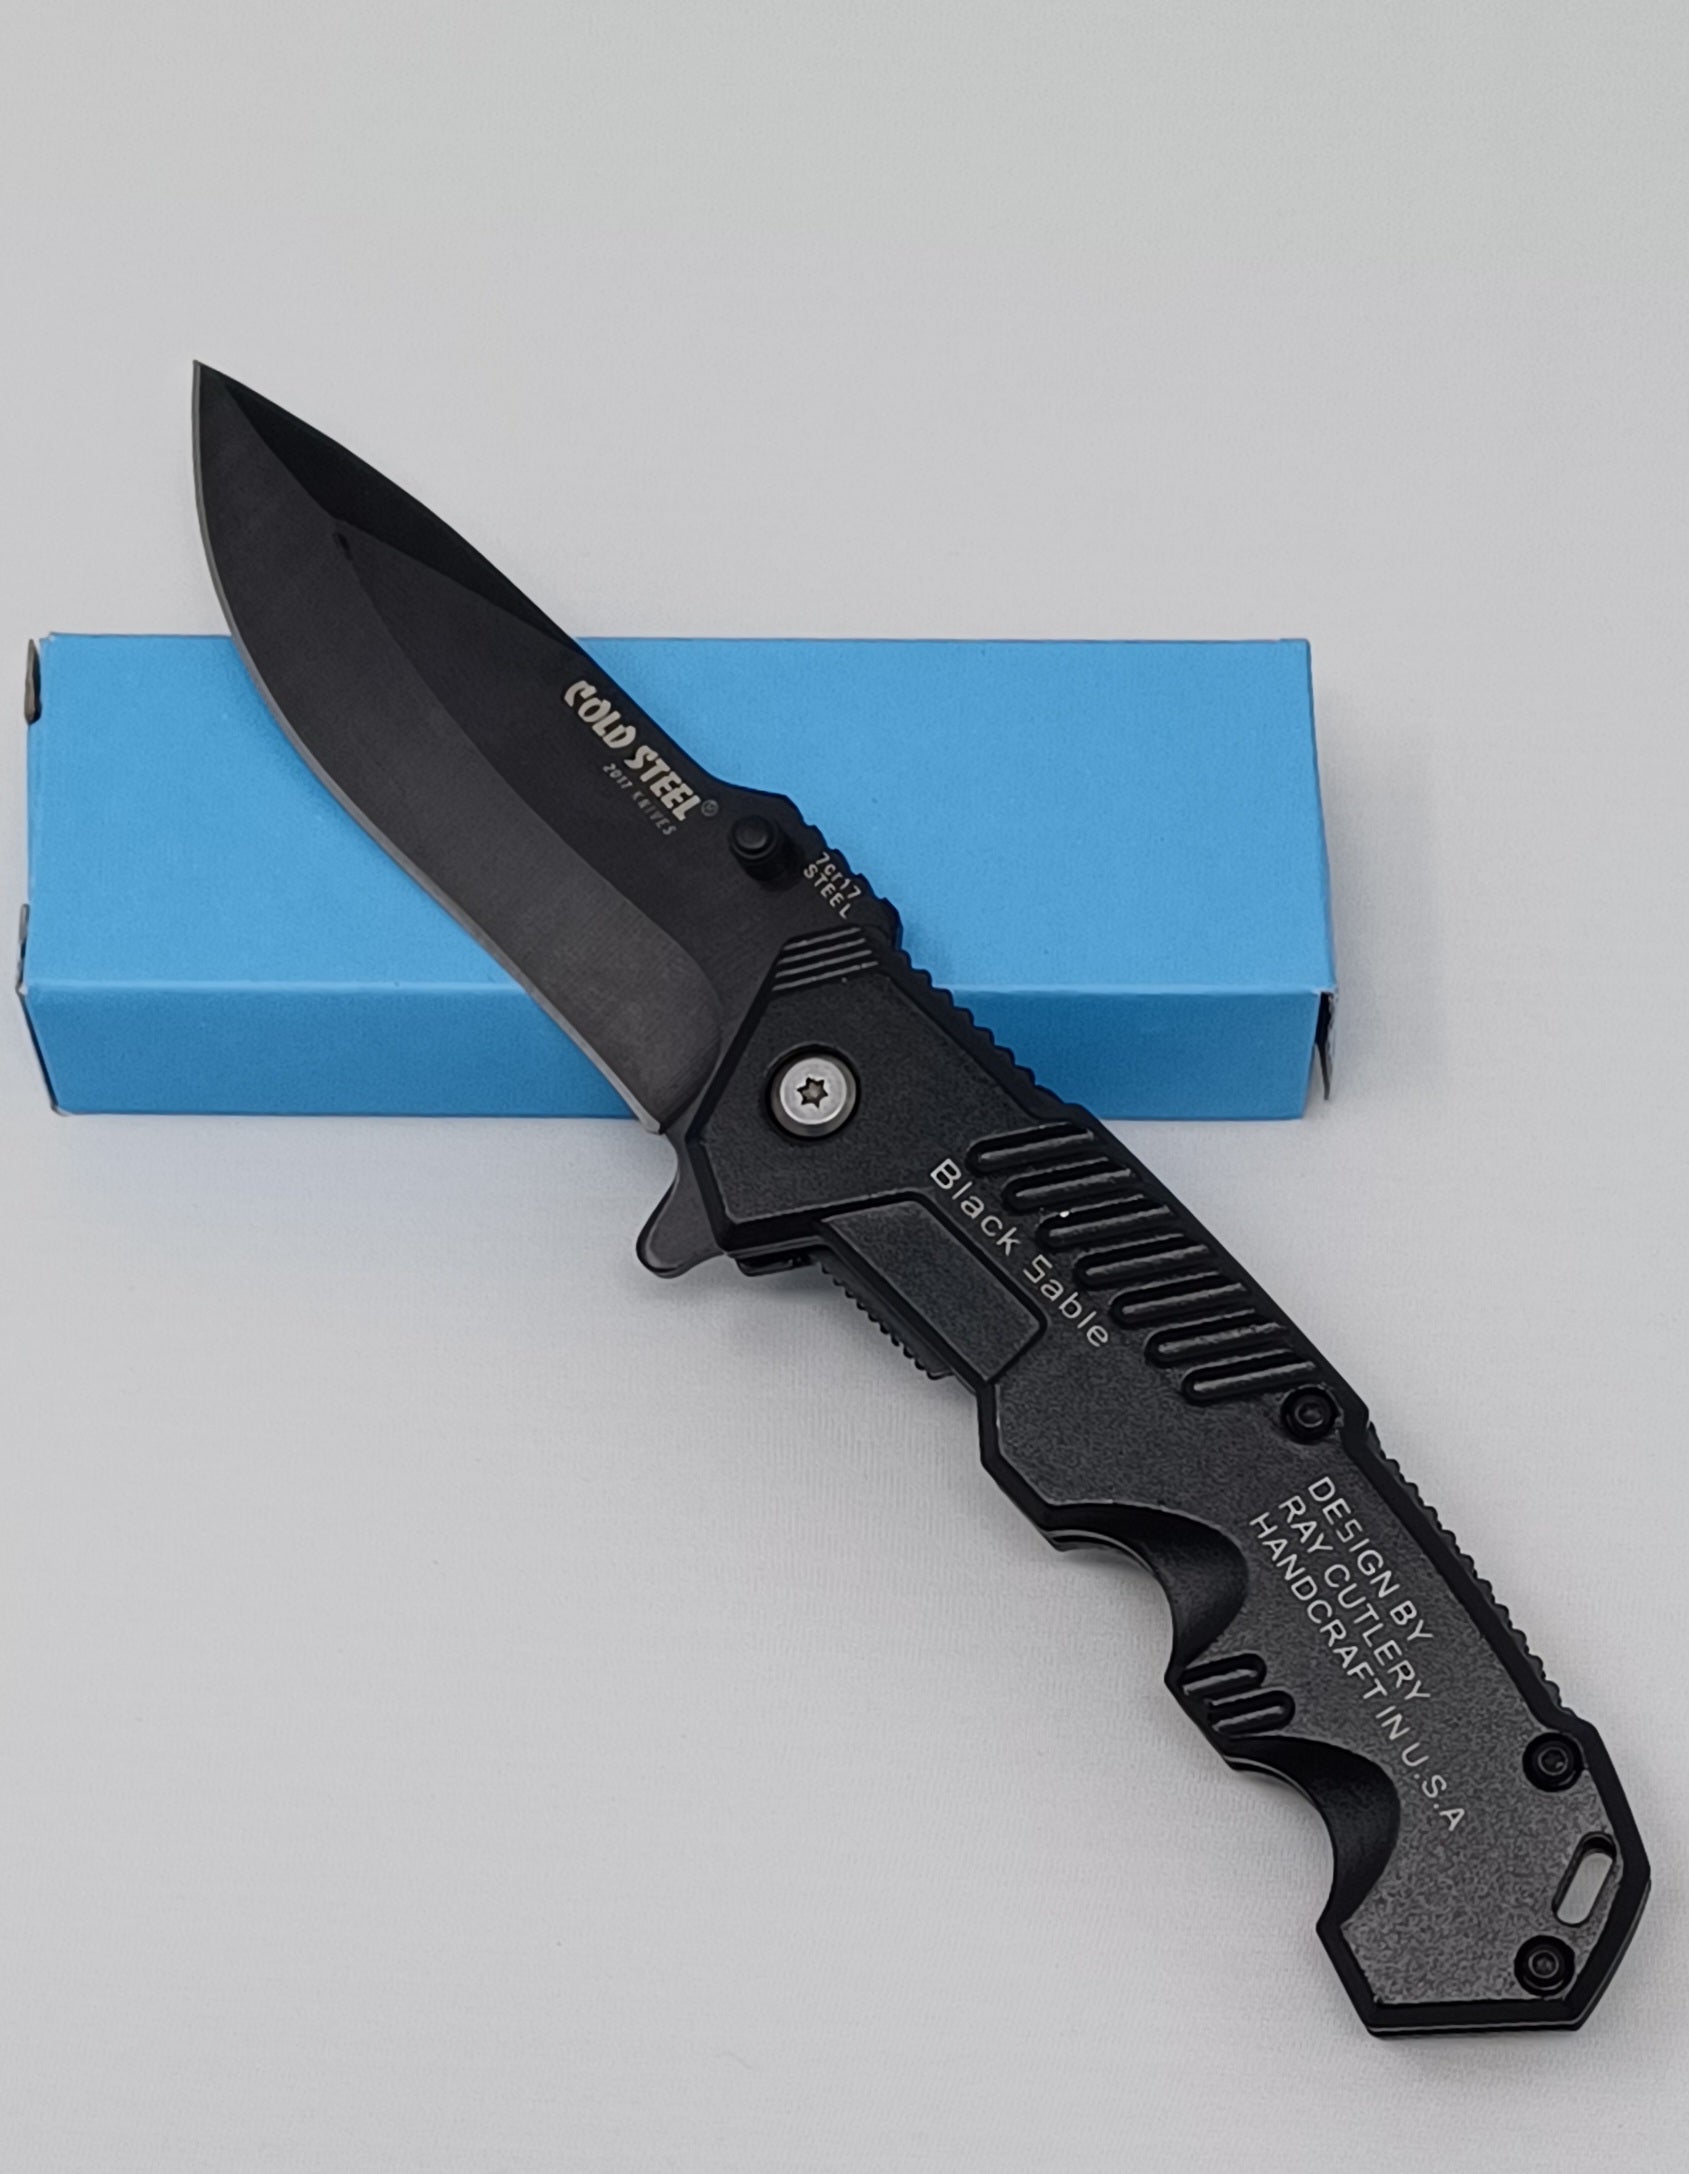 Black Sable 8” Folding Knife Tactical Stainless Steel Pocket Knife Cold Steel - Badger Survival 